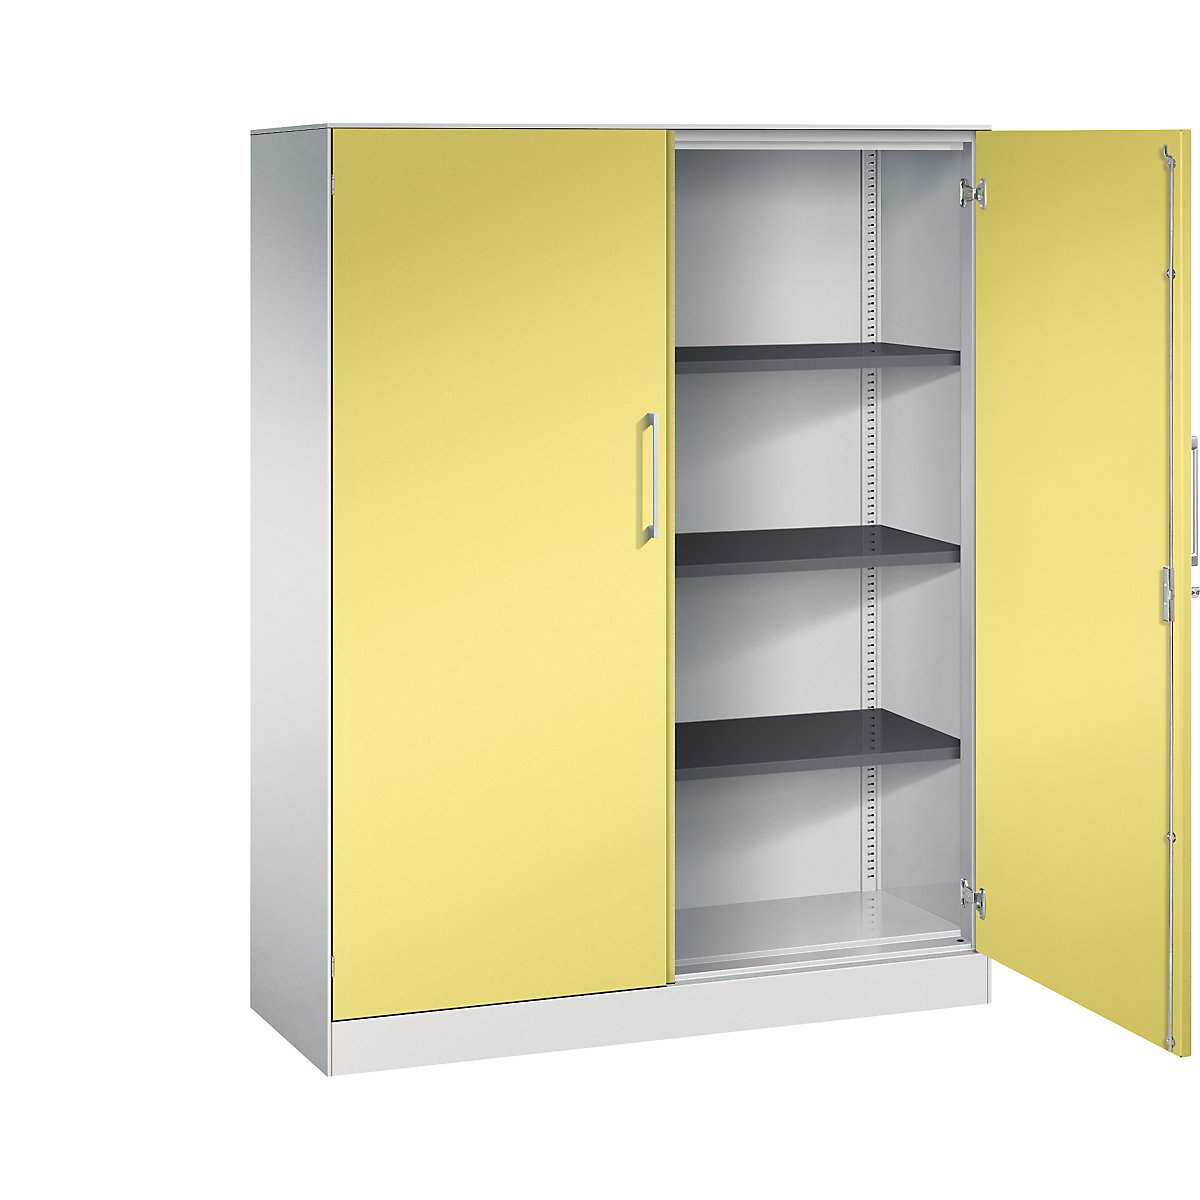 C+P – Skříň s otočnými dveřmi ASISTO, výška 1617 mm, šířka 1200 mm, 3 police, světlá šedá/sírová žlutá